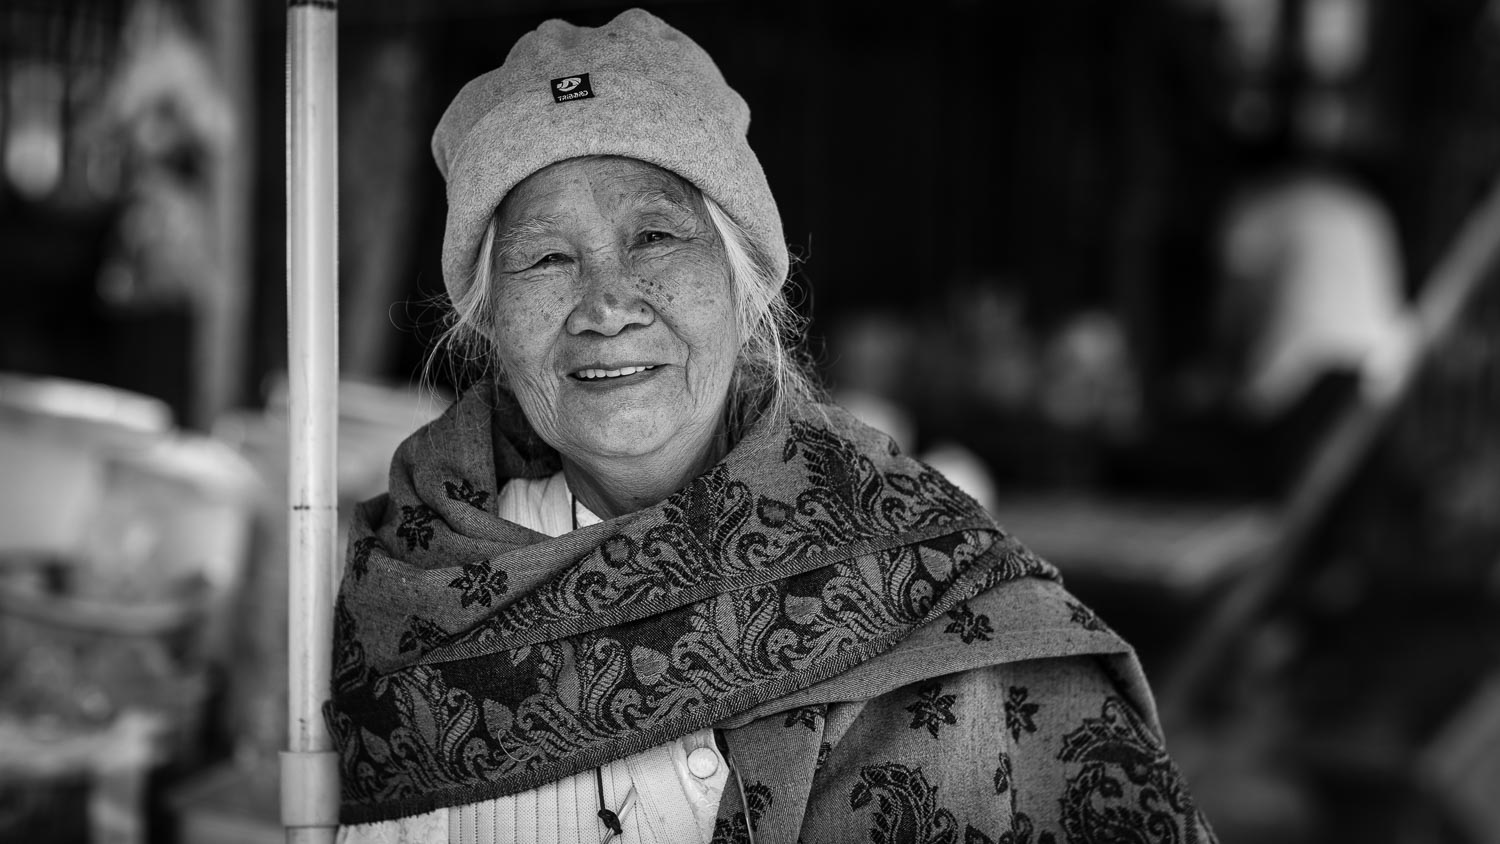 luang prabang smiling woman street portrait